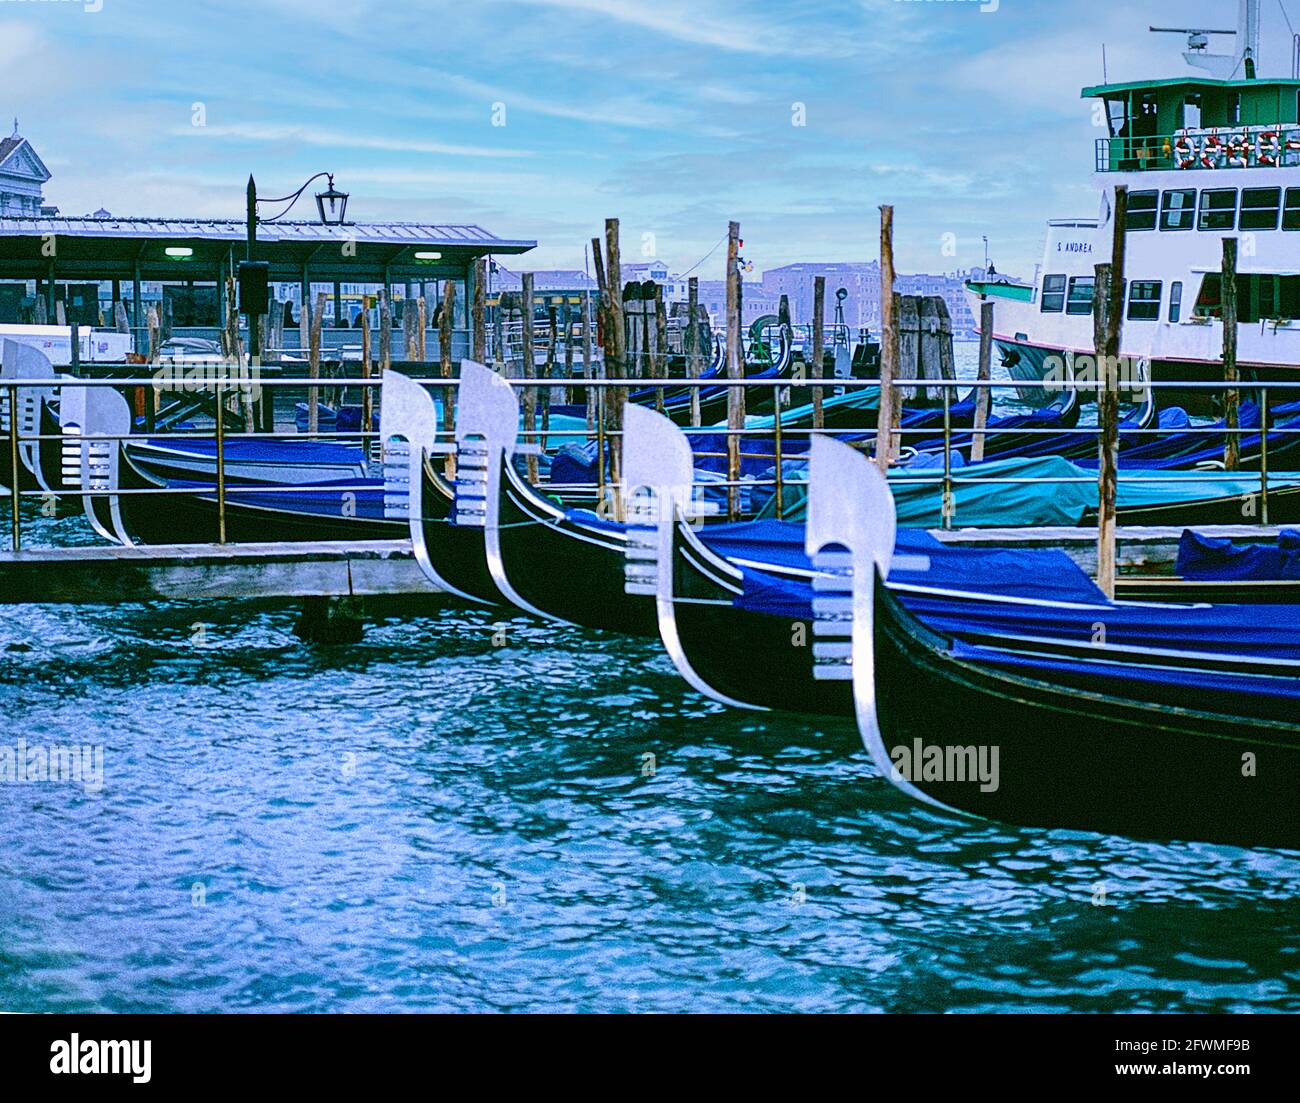 Gondole ormeggiate sul Canal Grande a Venezia Italia Foto Stock